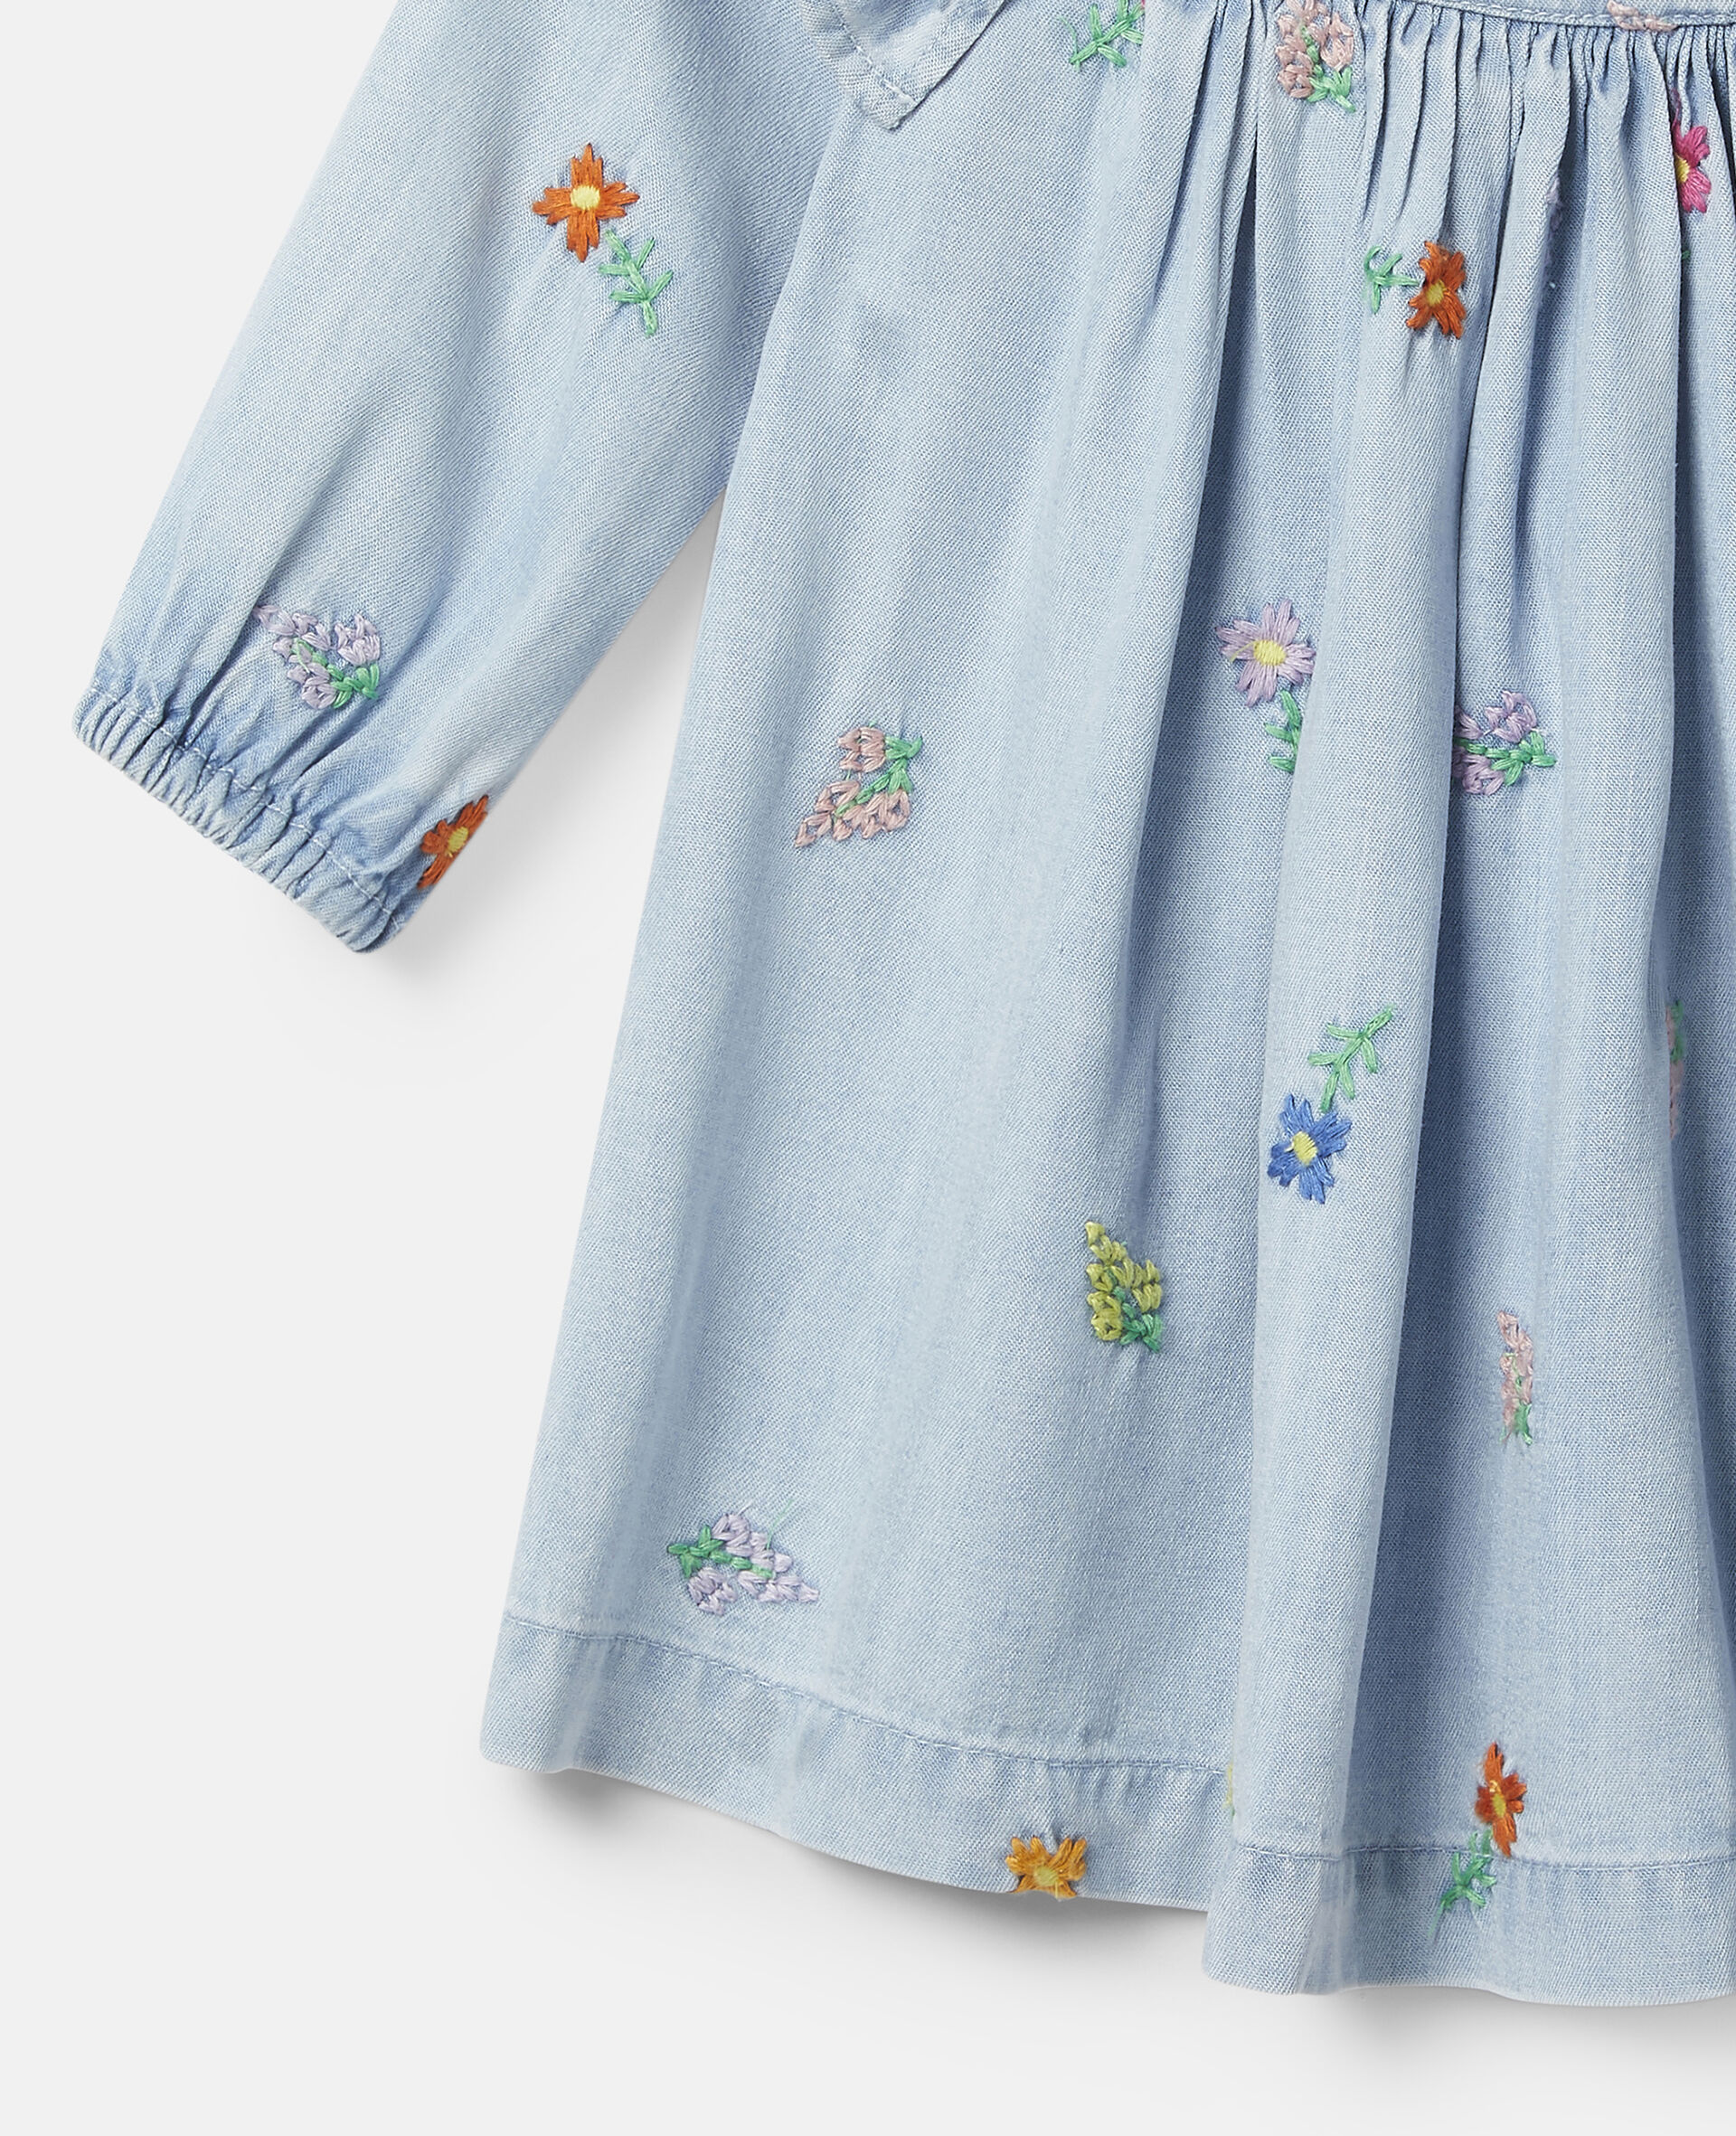 Embroidered Flowers Denim Dress-Blue-large image number 1